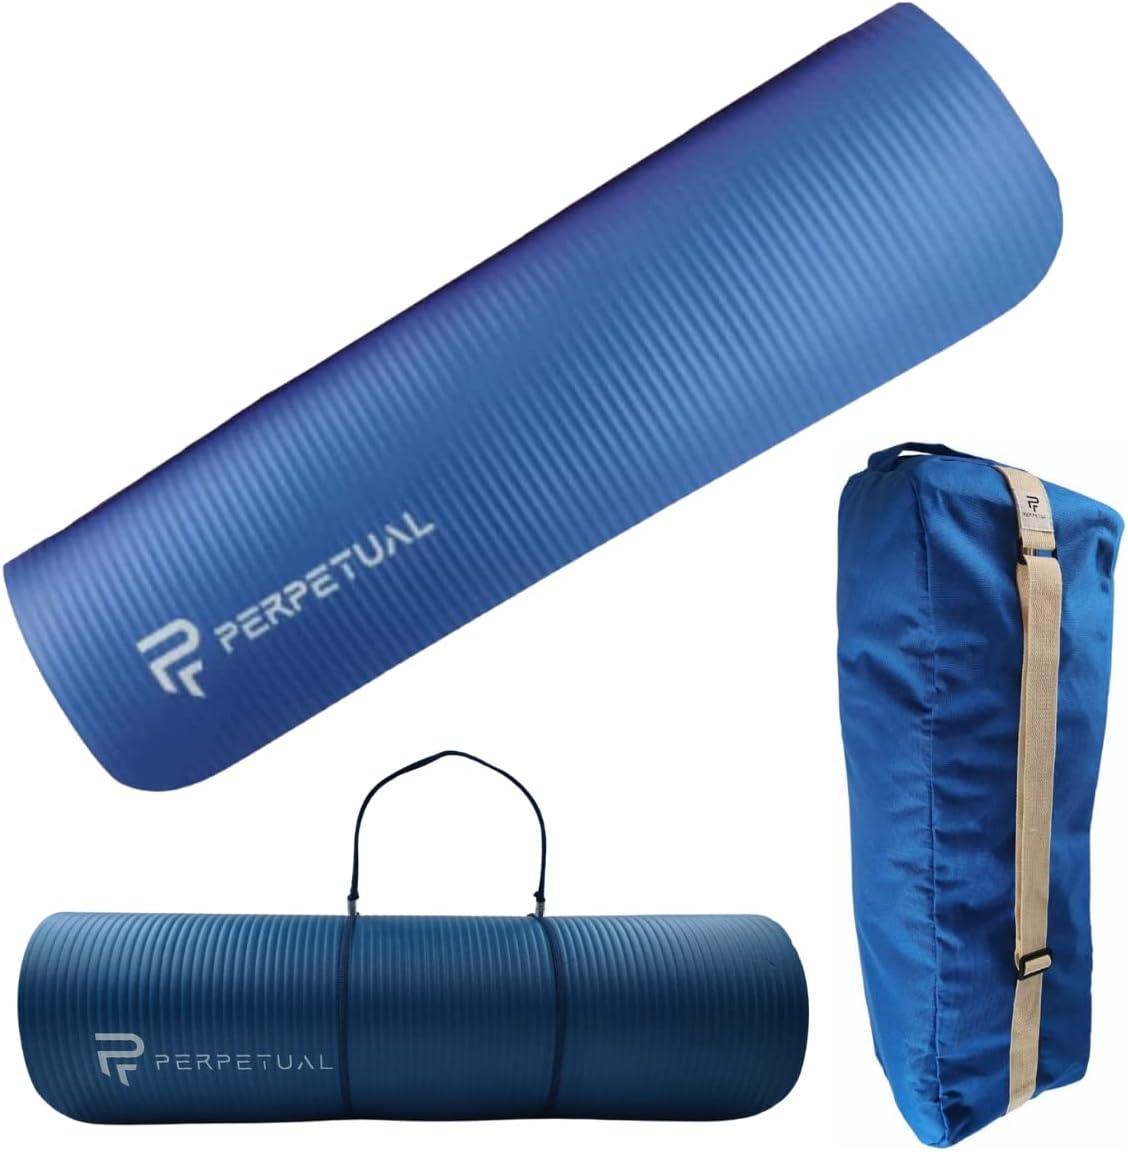 Kit Esterilla De Yoga Y Pilates Perpetual De 10mm Con Bolsa De Transporte Y Correa - azul - 